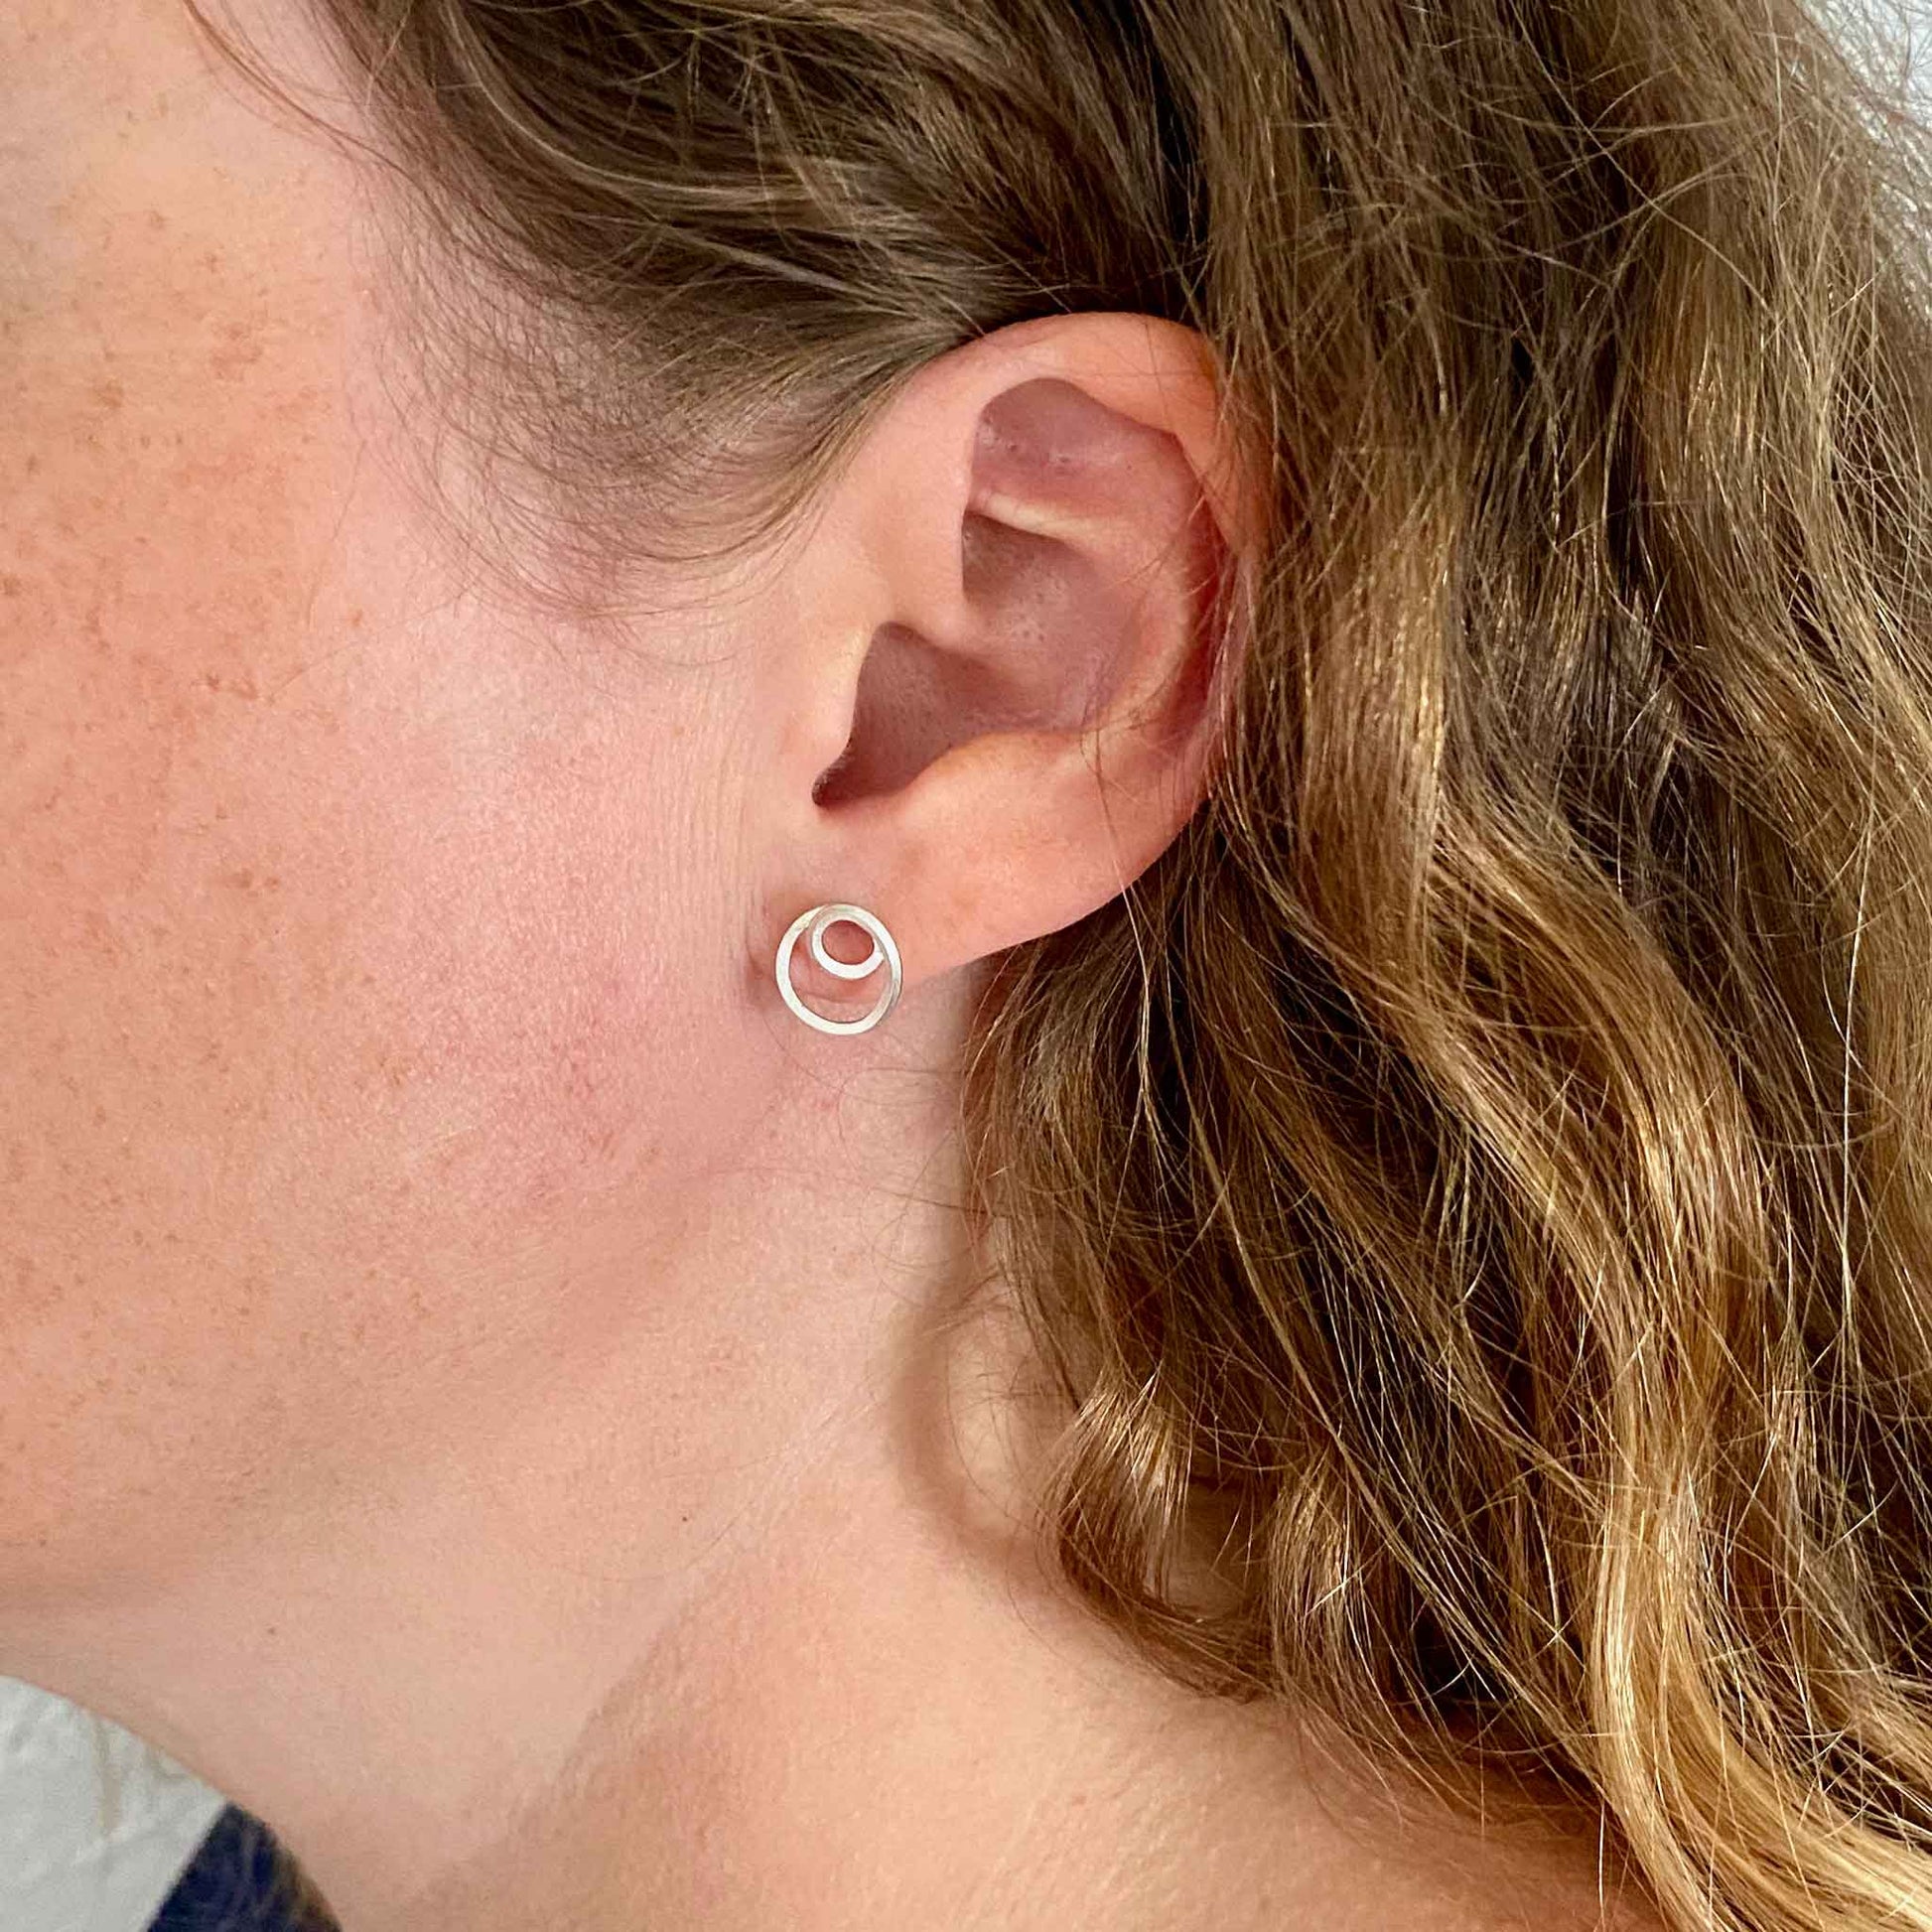 Tiny Loop D Loop stud earrings in the ear.